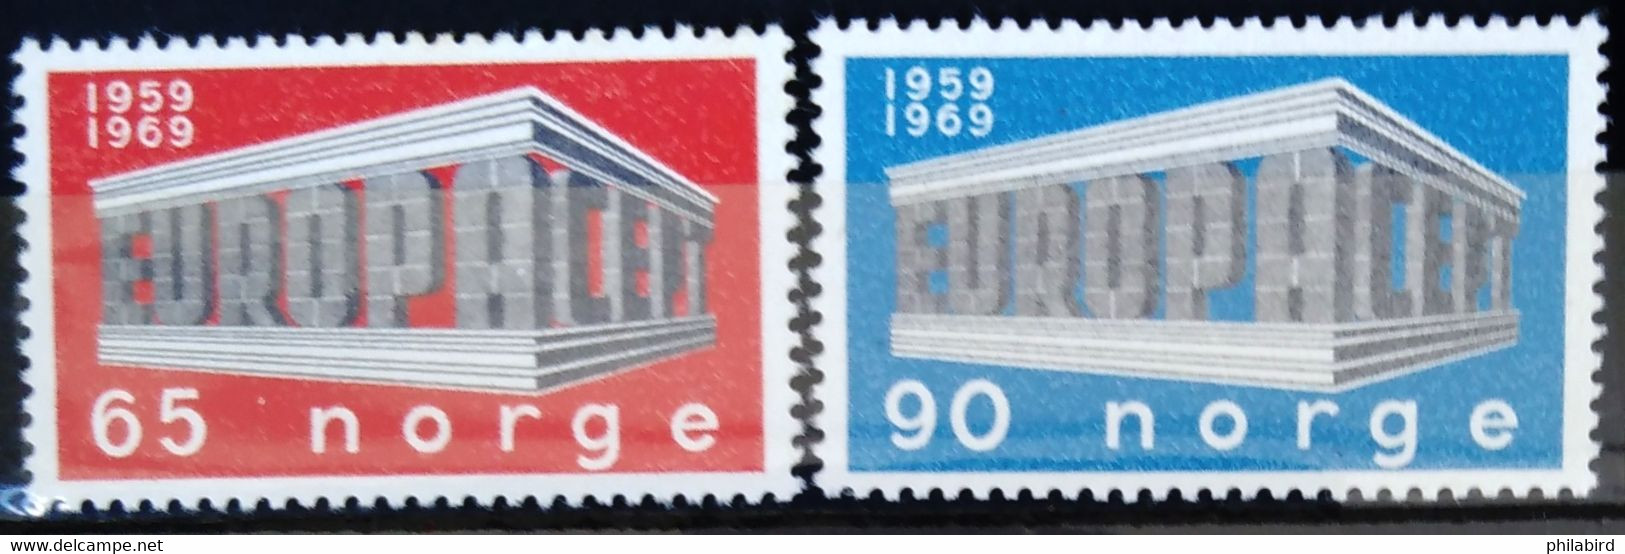 EUROPA 1969 - NORVEGE                  N° 538/539                    NEUF** - 1969